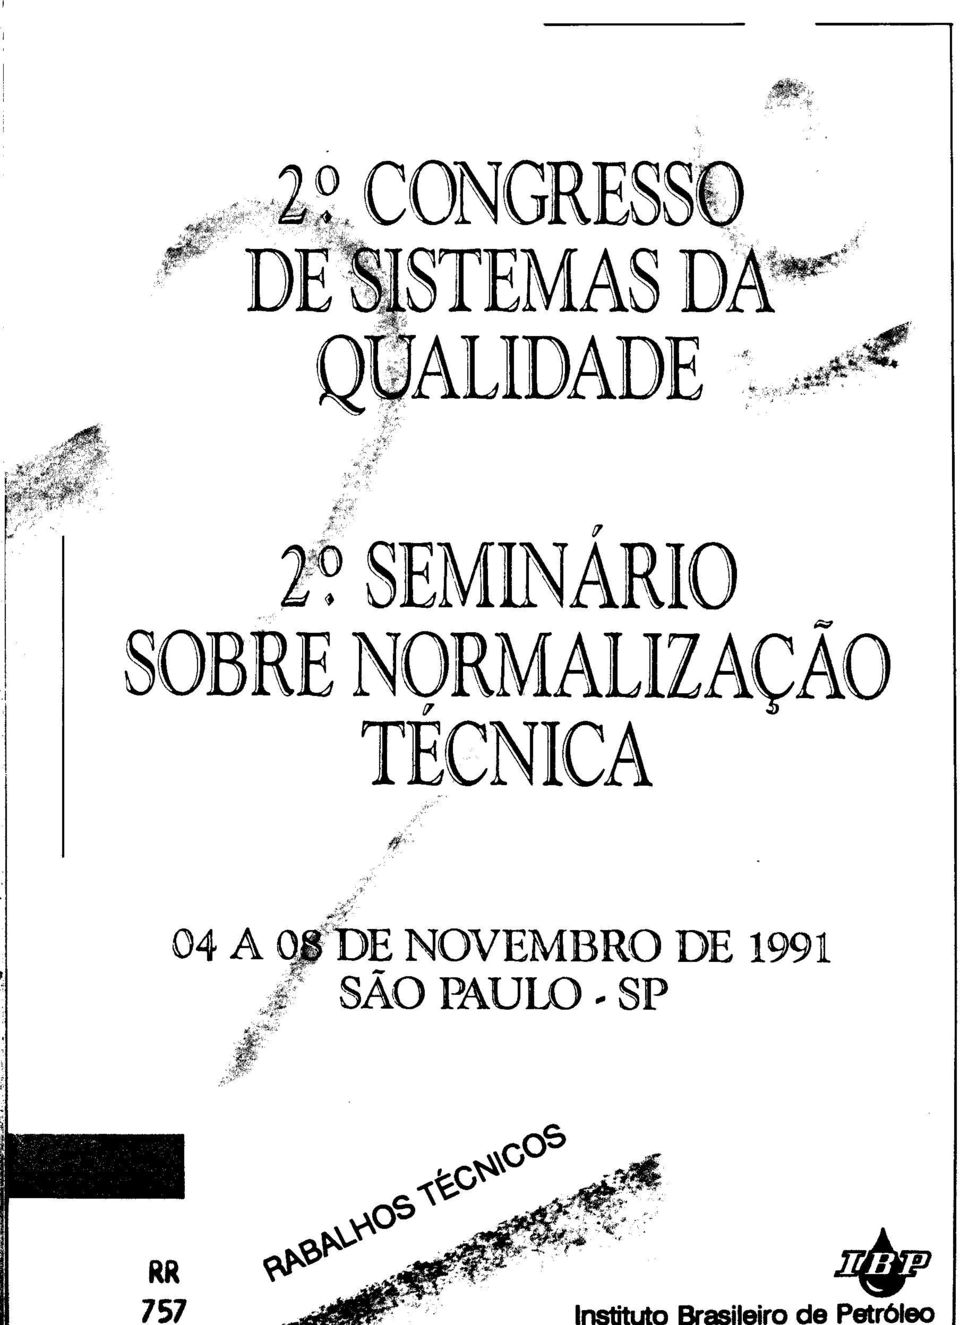 1991 / SAO PAULO ^ RR 757